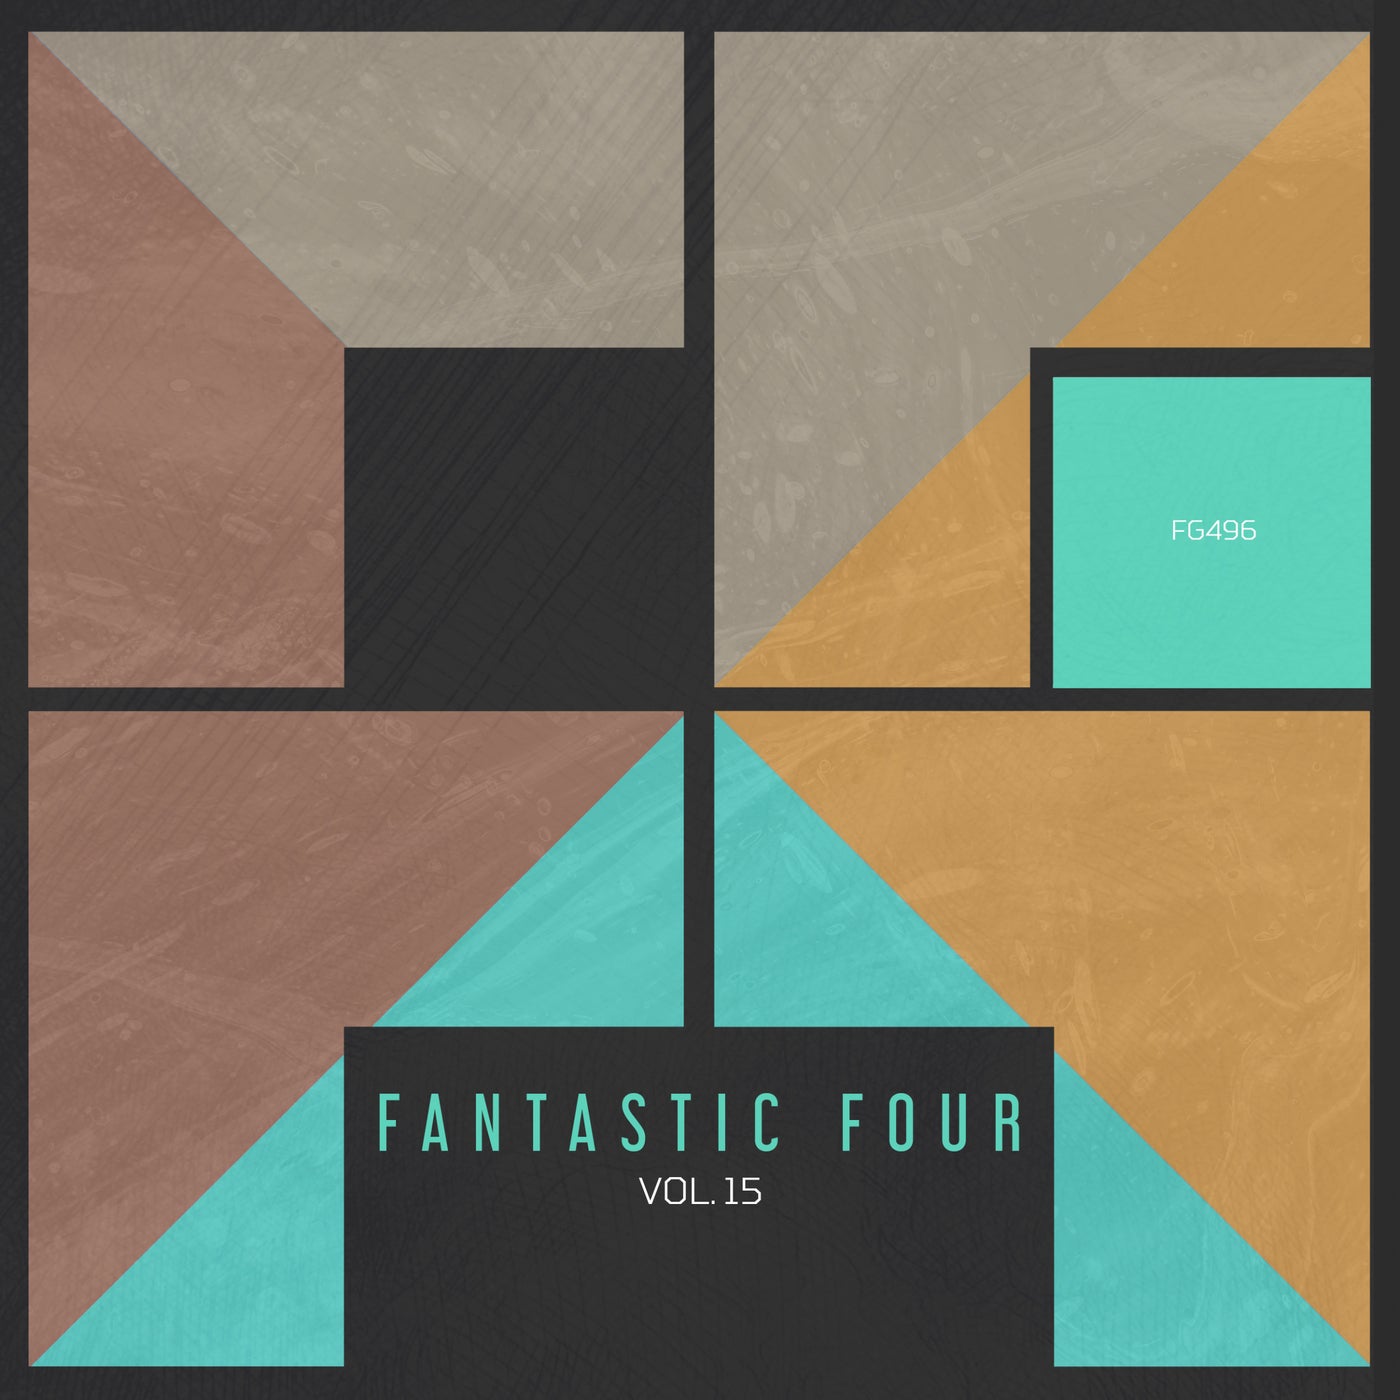 Fantastic Four vol. 15